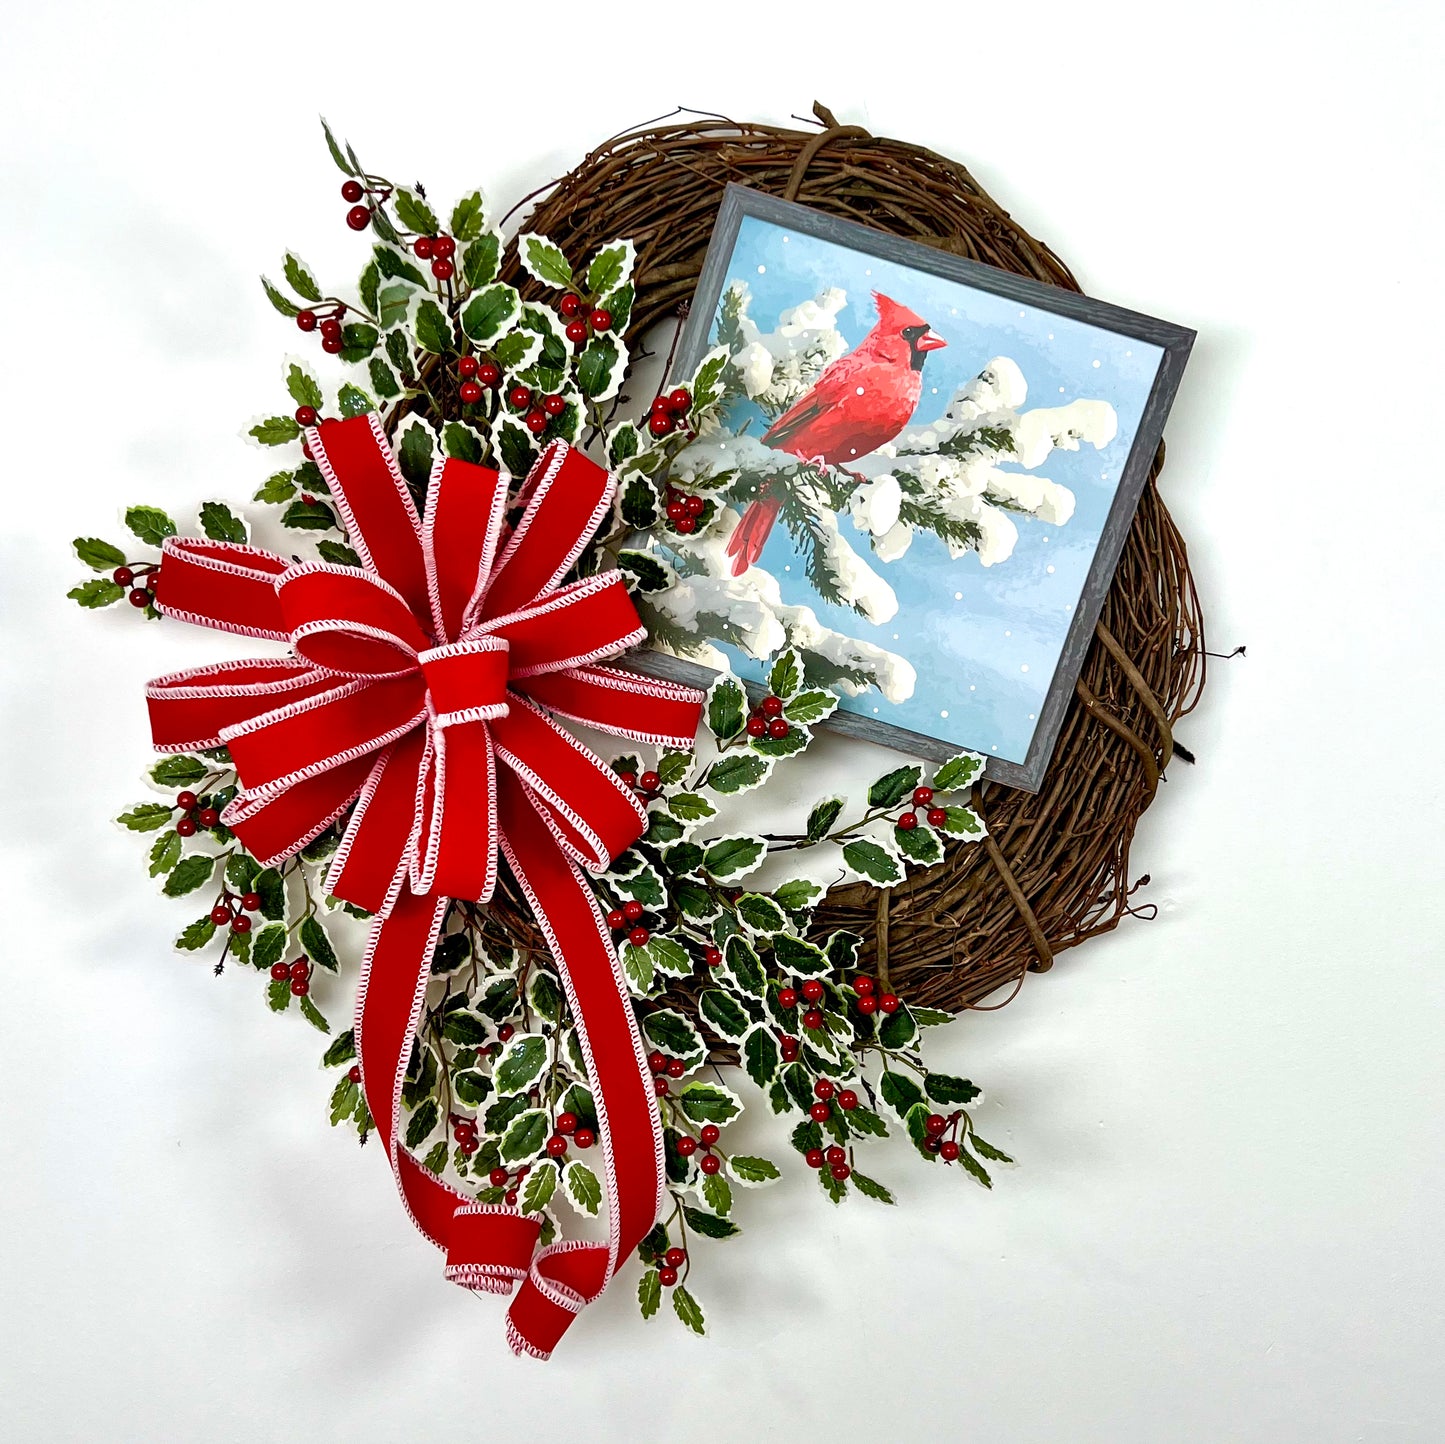 Snowy Cardinal Wreath Kit